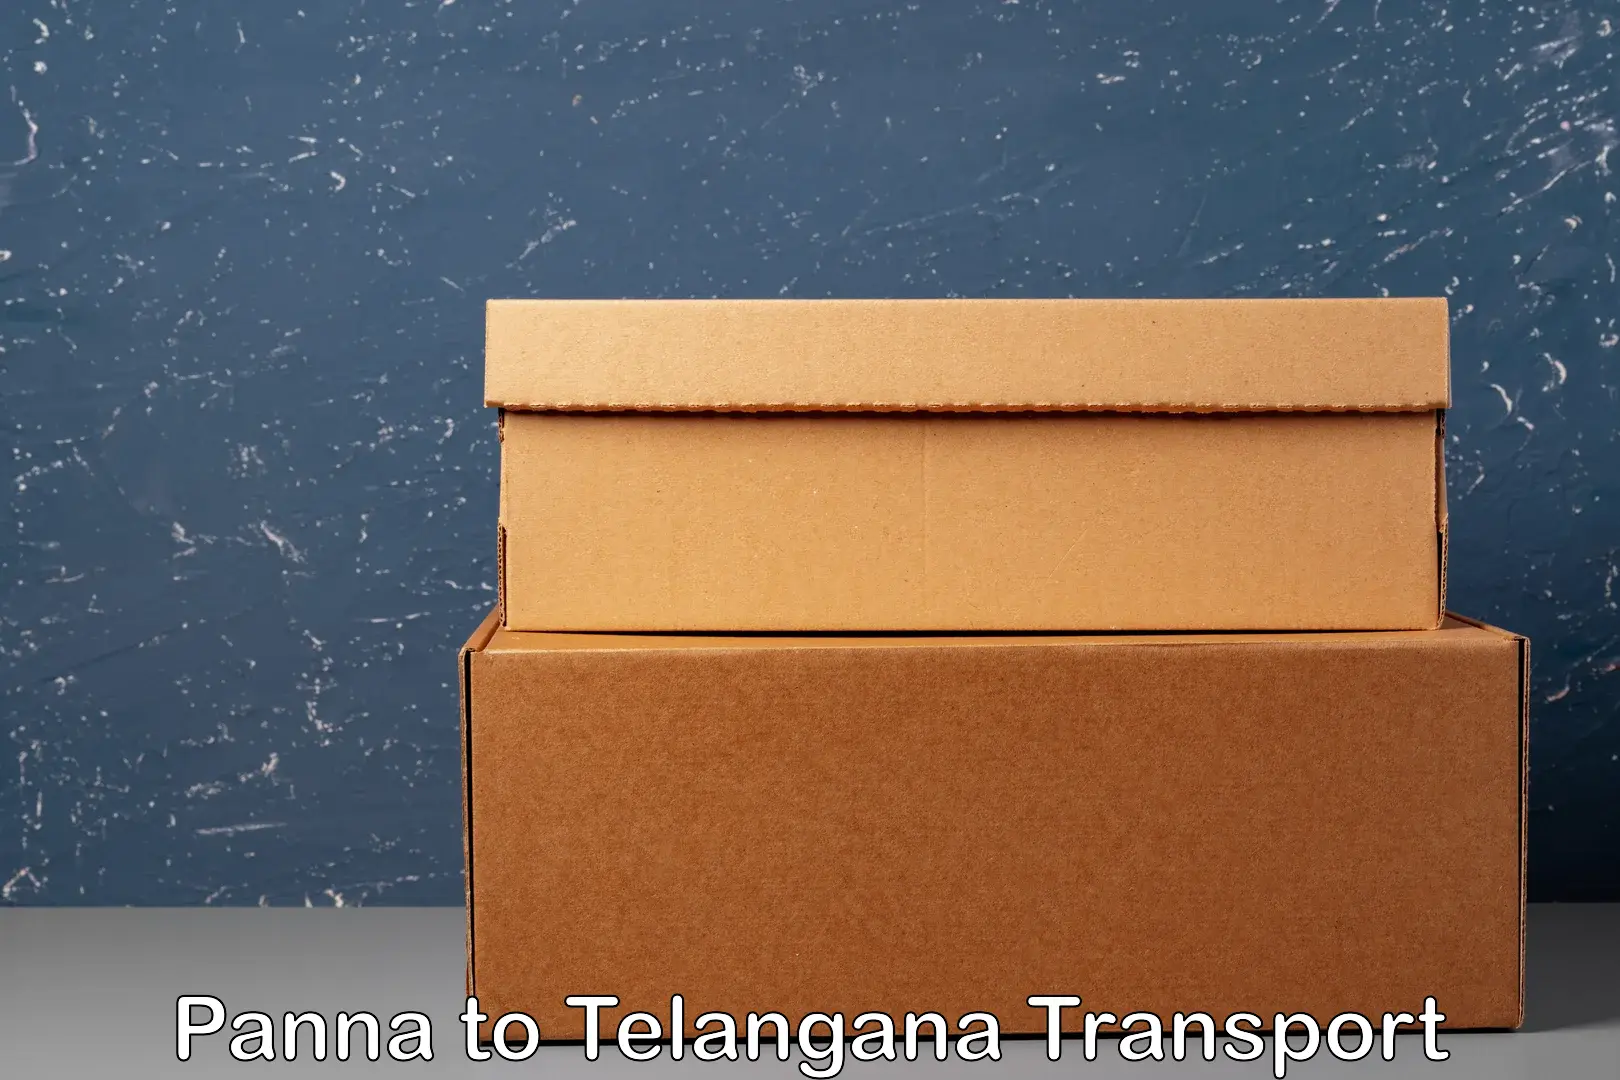 Air cargo transport services Panna to Nakerakal